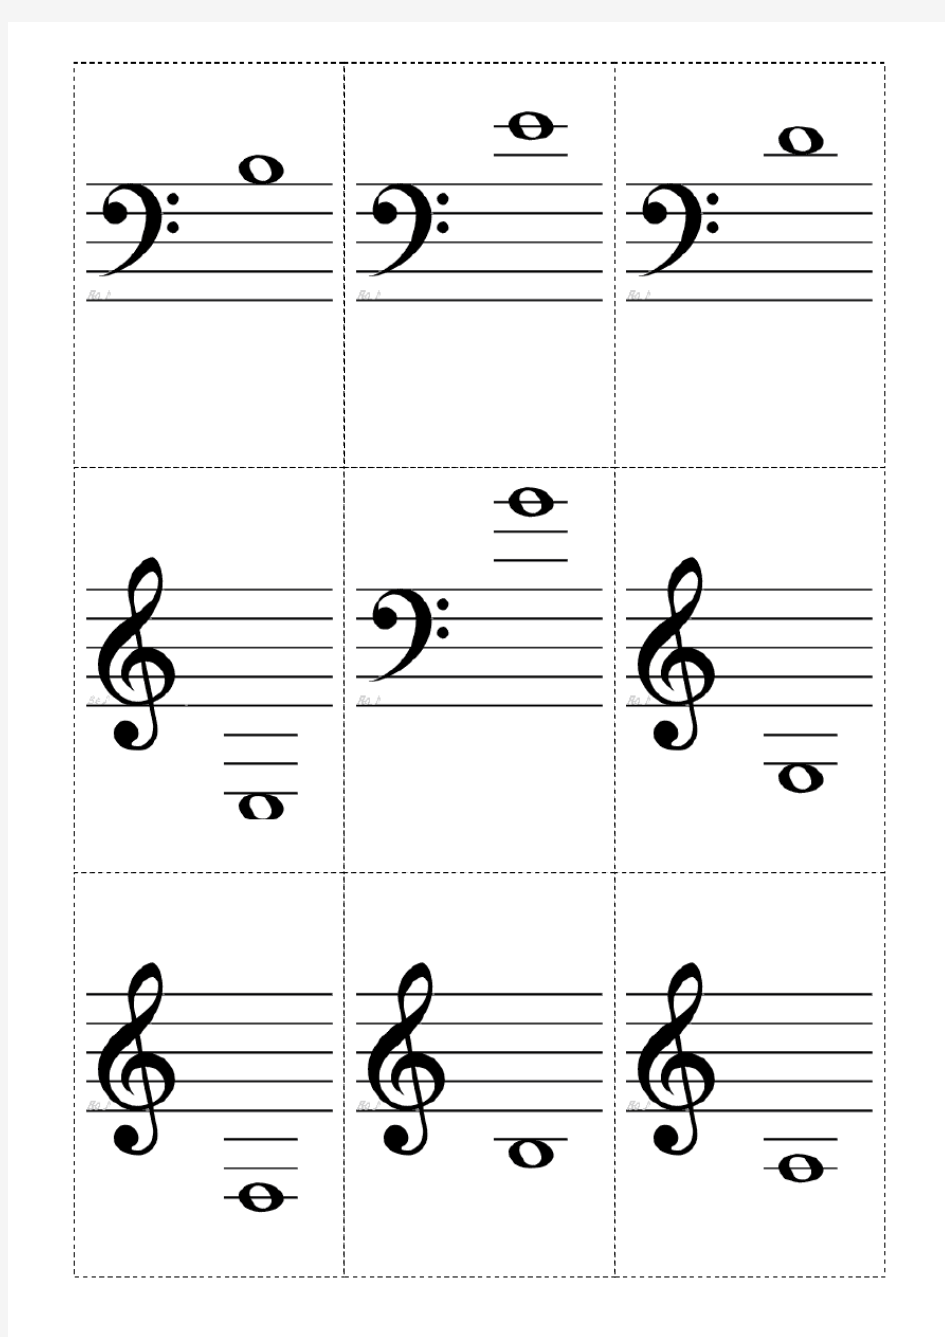 钢琴中常见符号,适合初学者(卡片打印版)